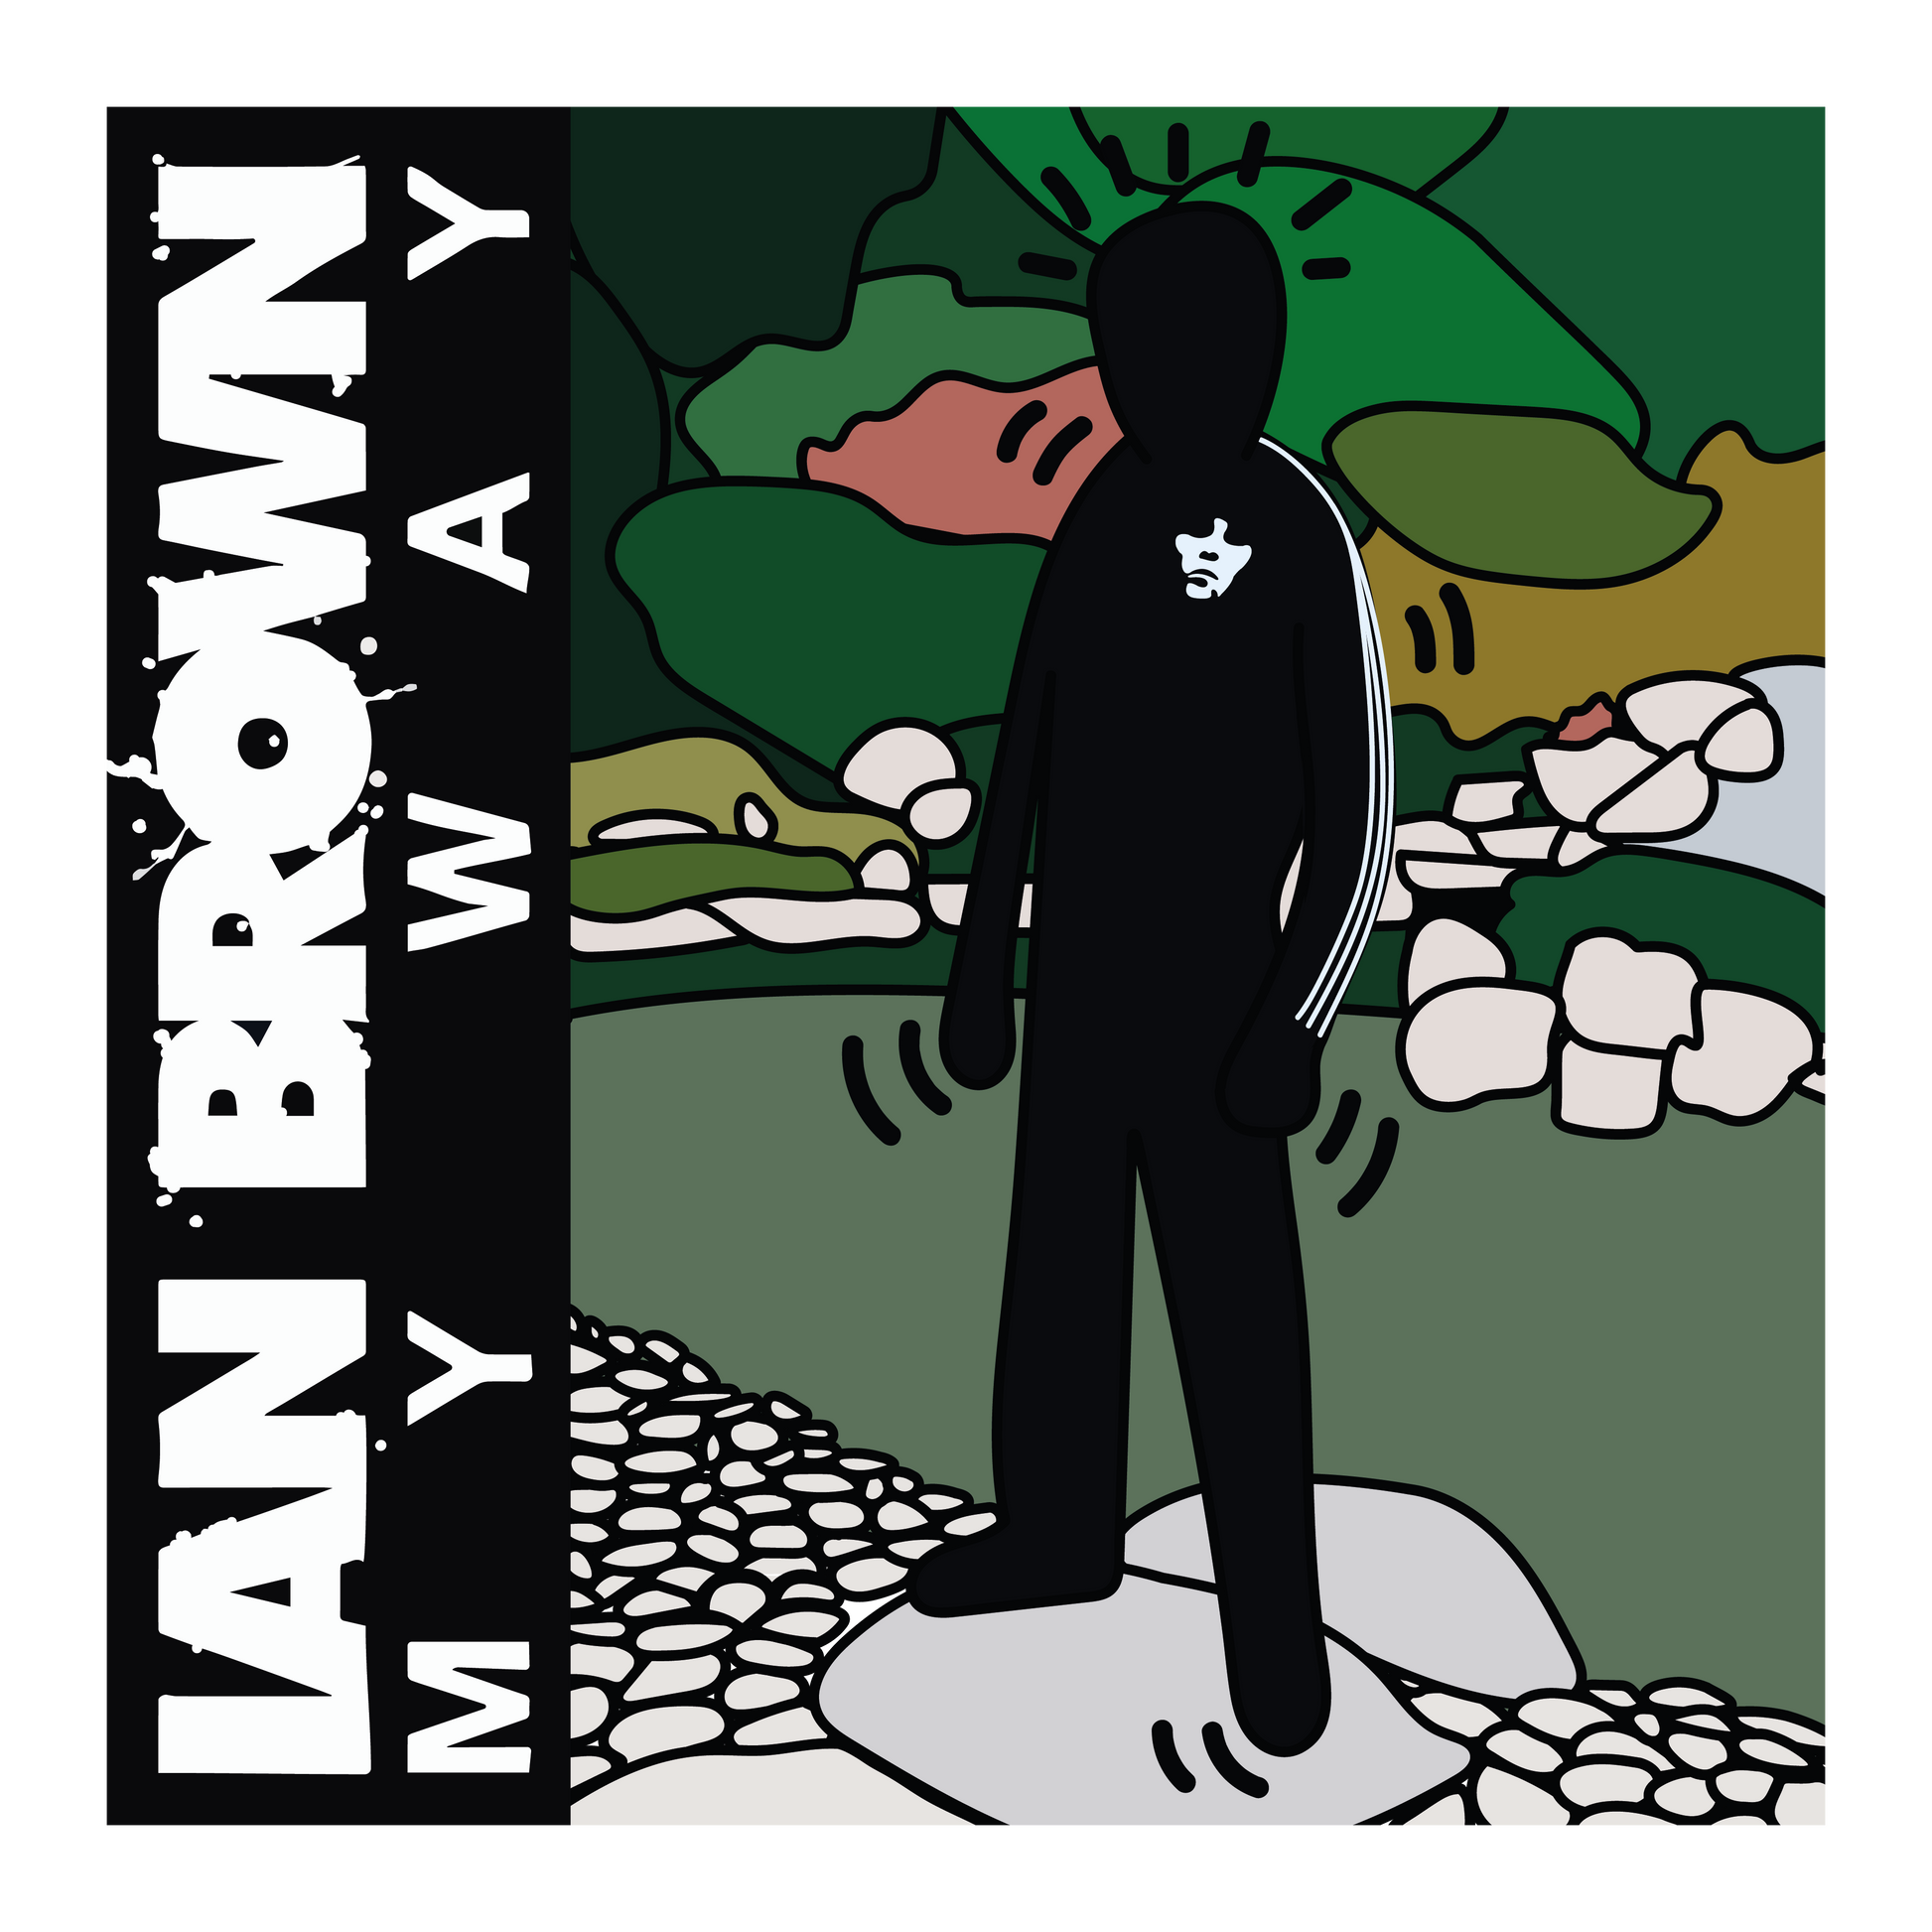 Ian Brown, My way - Smolensky Gallery